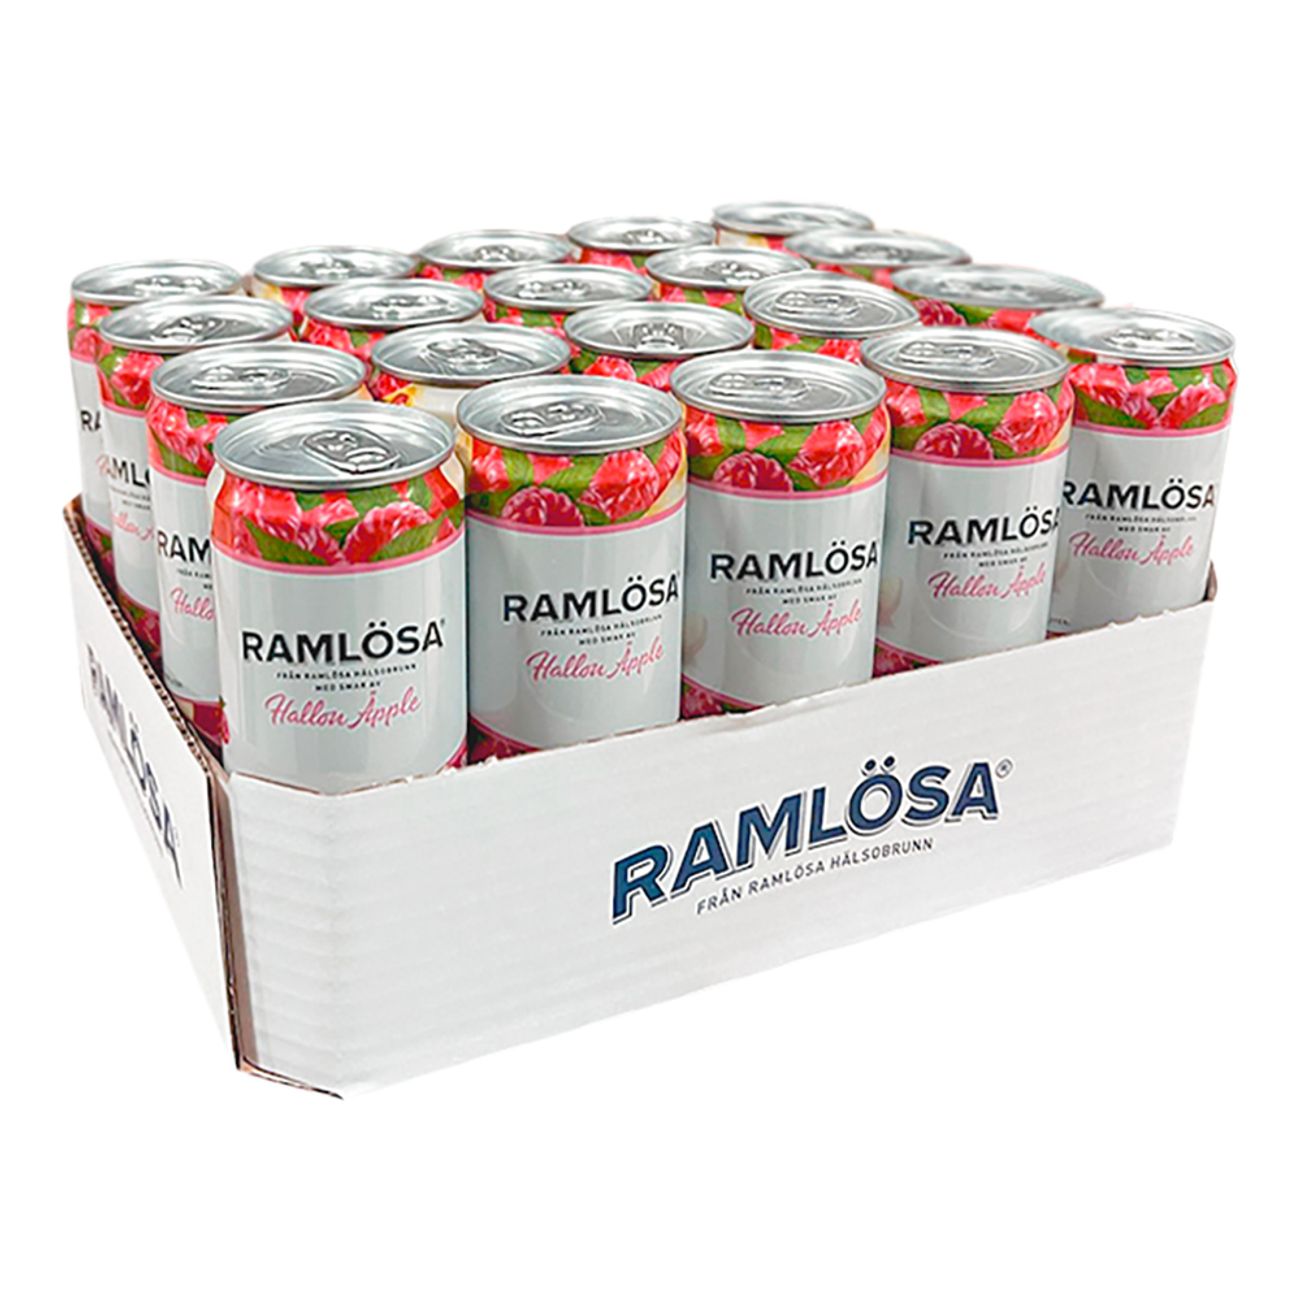 ramlosa-hallon-apple-92716-3